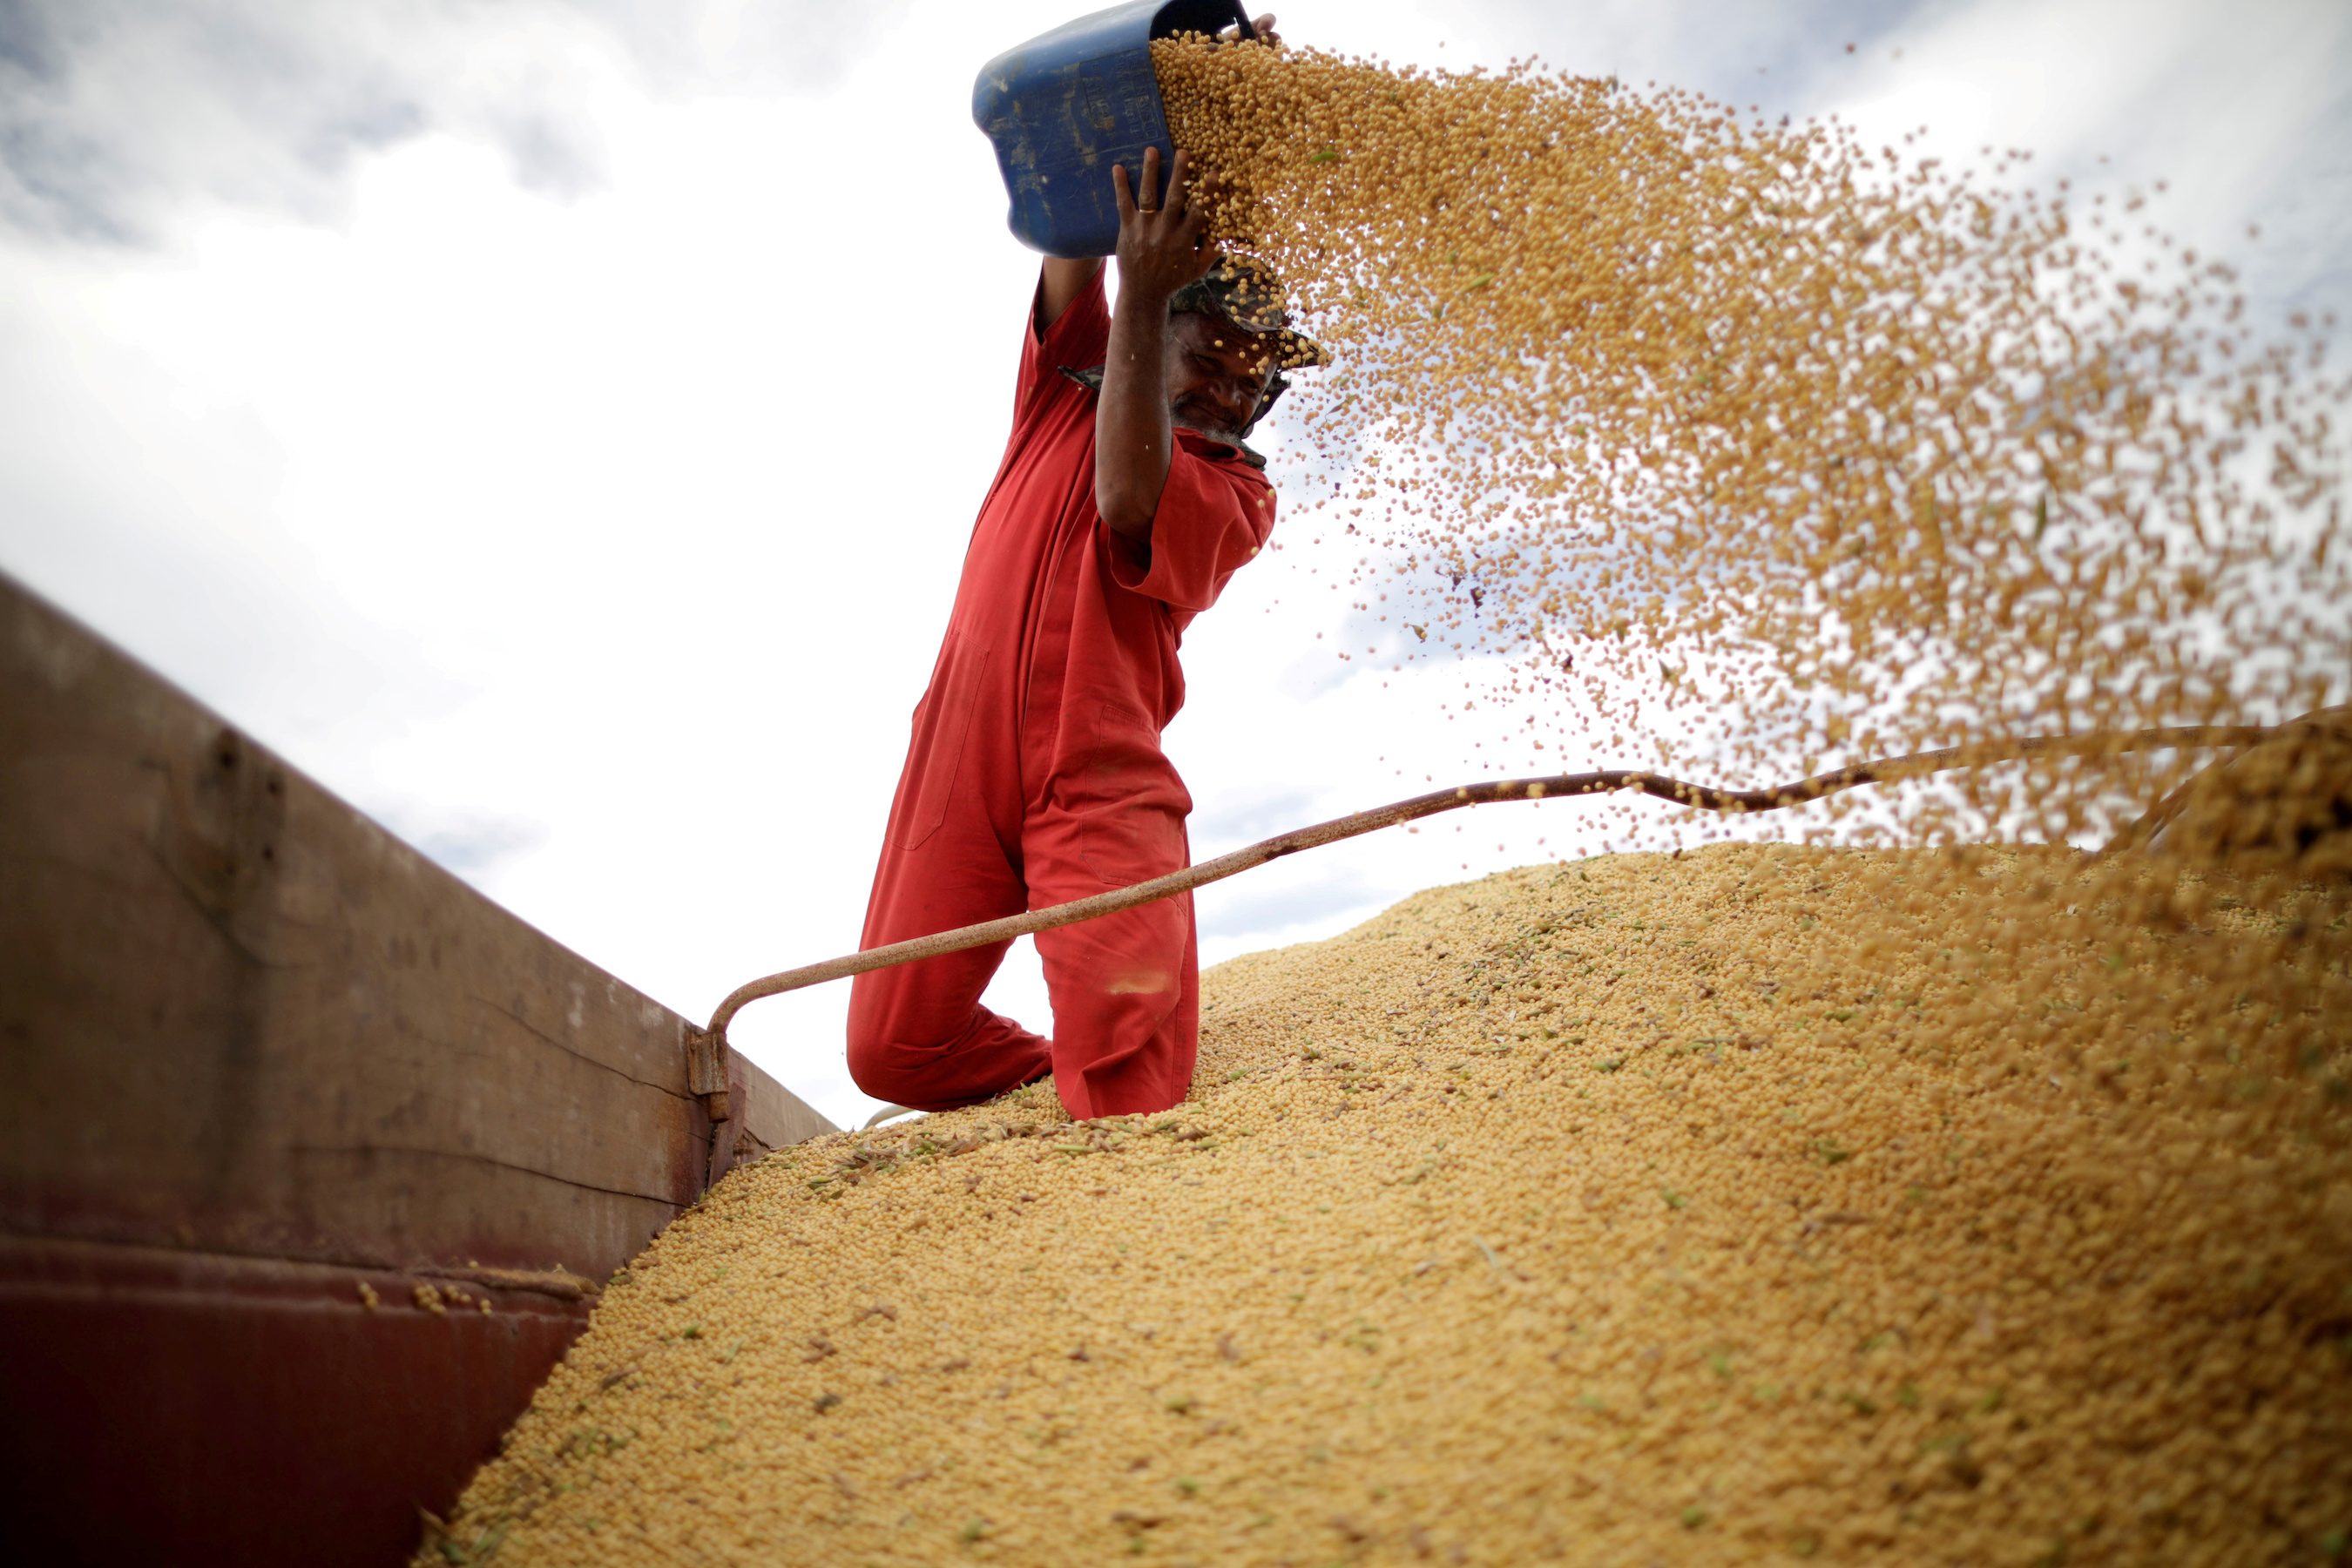 Brazil’s slow soybean harvest widens US export window